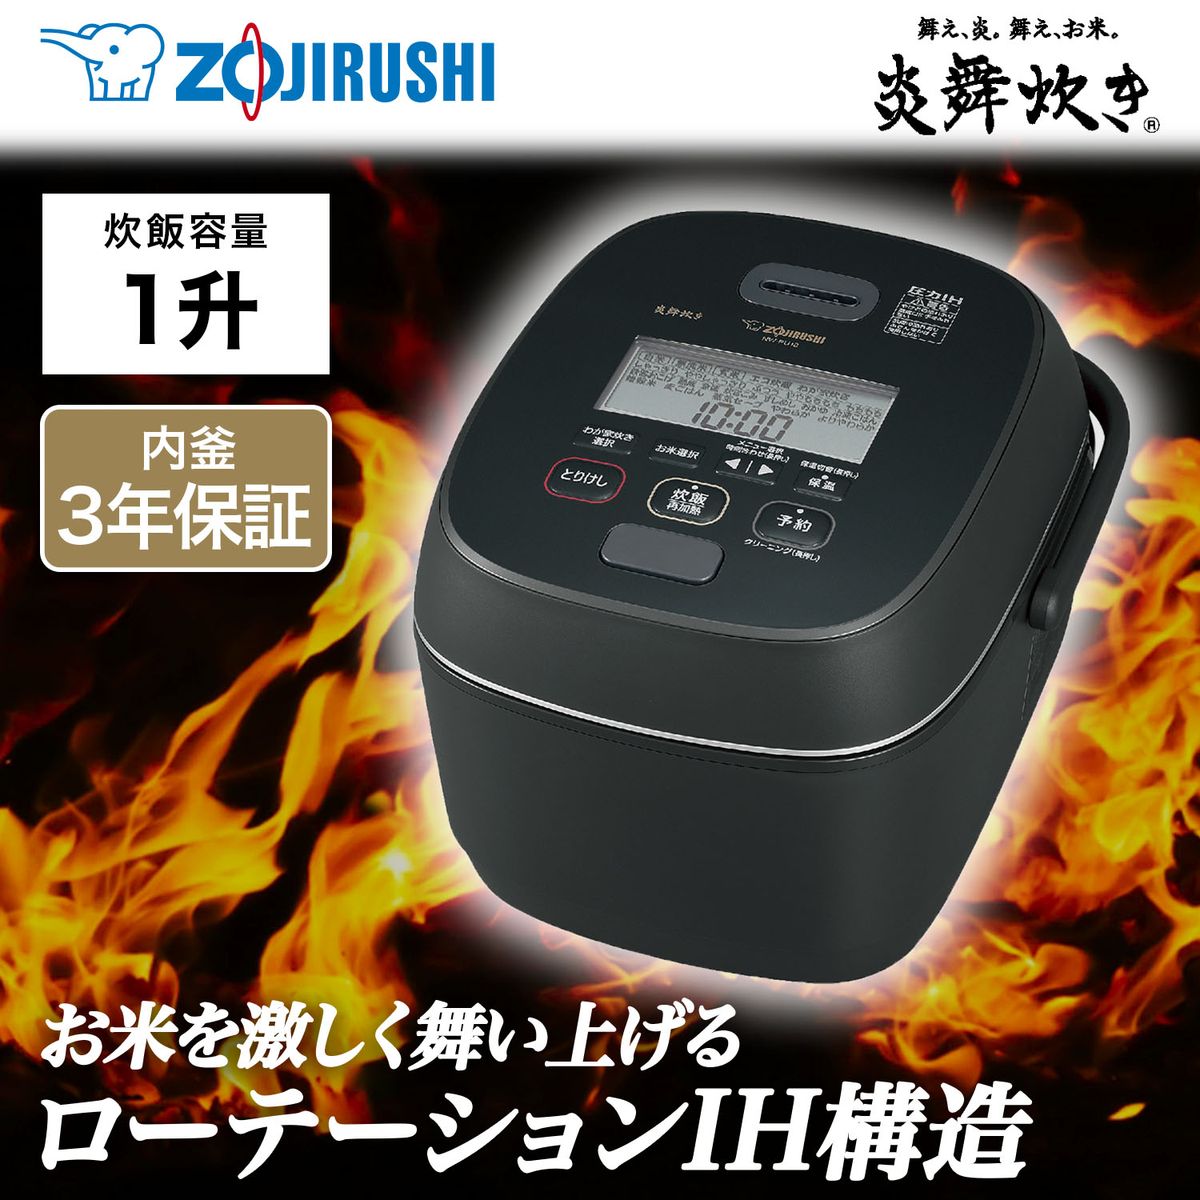 [22年度モデル 在庫限り]ZOJIRUSHI 圧力IH炊飯器 炎舞炊き 一升炊き ブラック